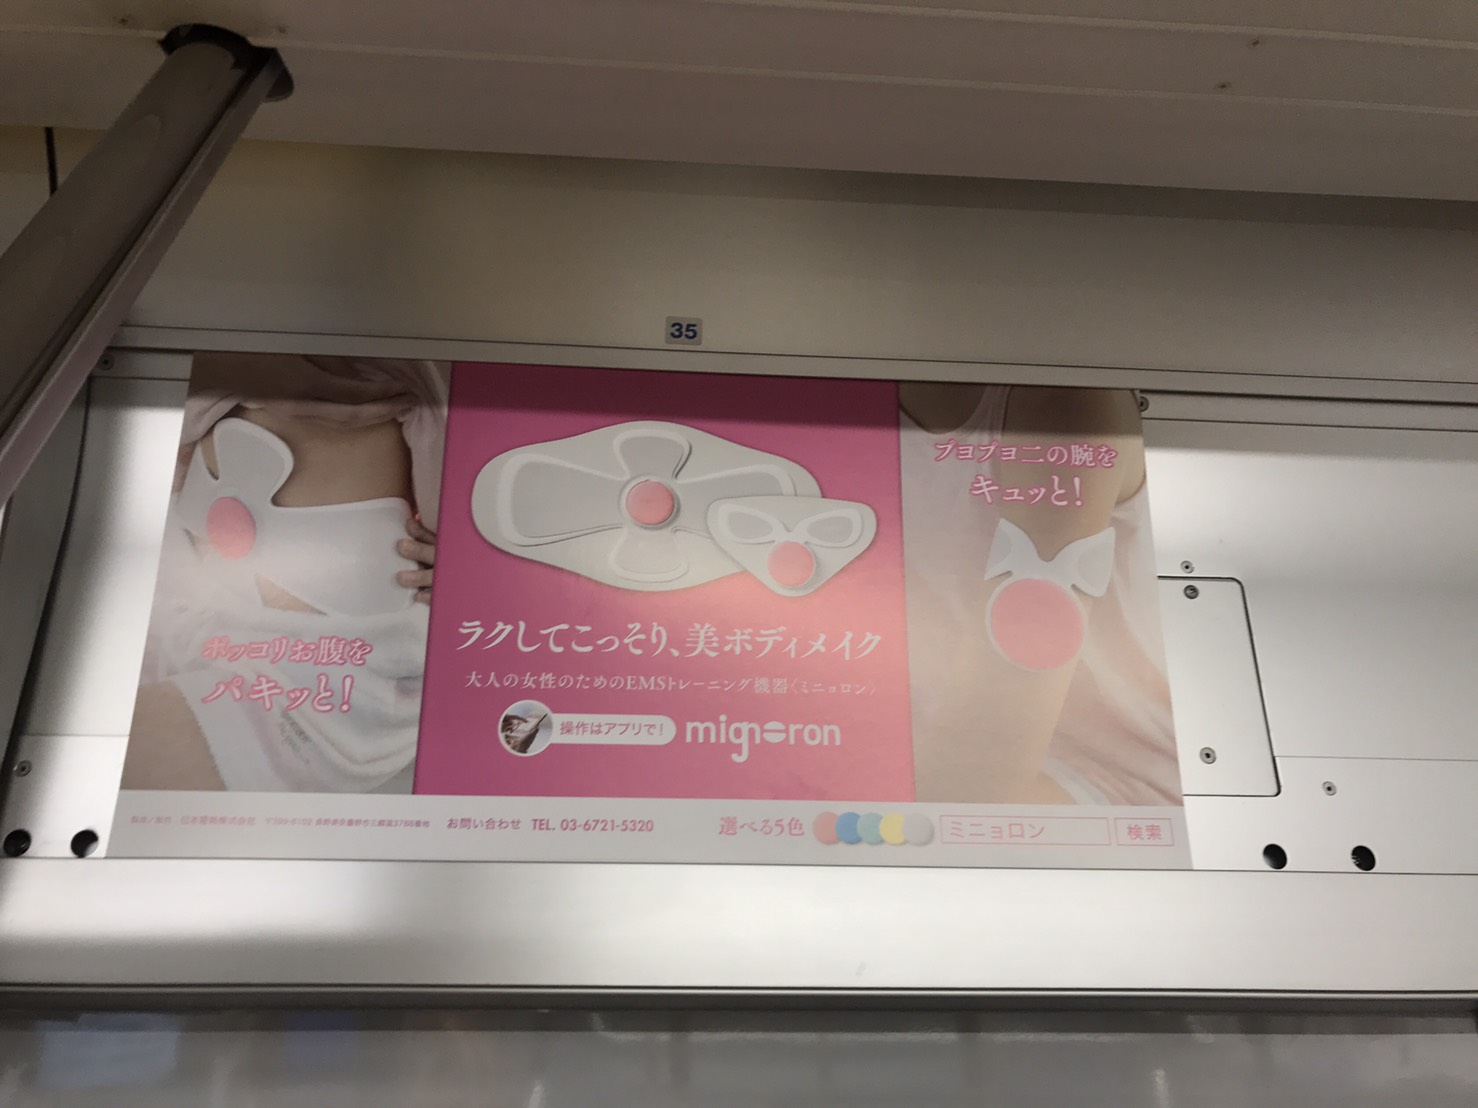 東京メトロ 電車内 まど上ポスター広告 女性専用車両での掲載 サンエイblog 交通広告の株式会社サンエイ企画 サンエイblog 交通広告 の株式会社サンエイ企画